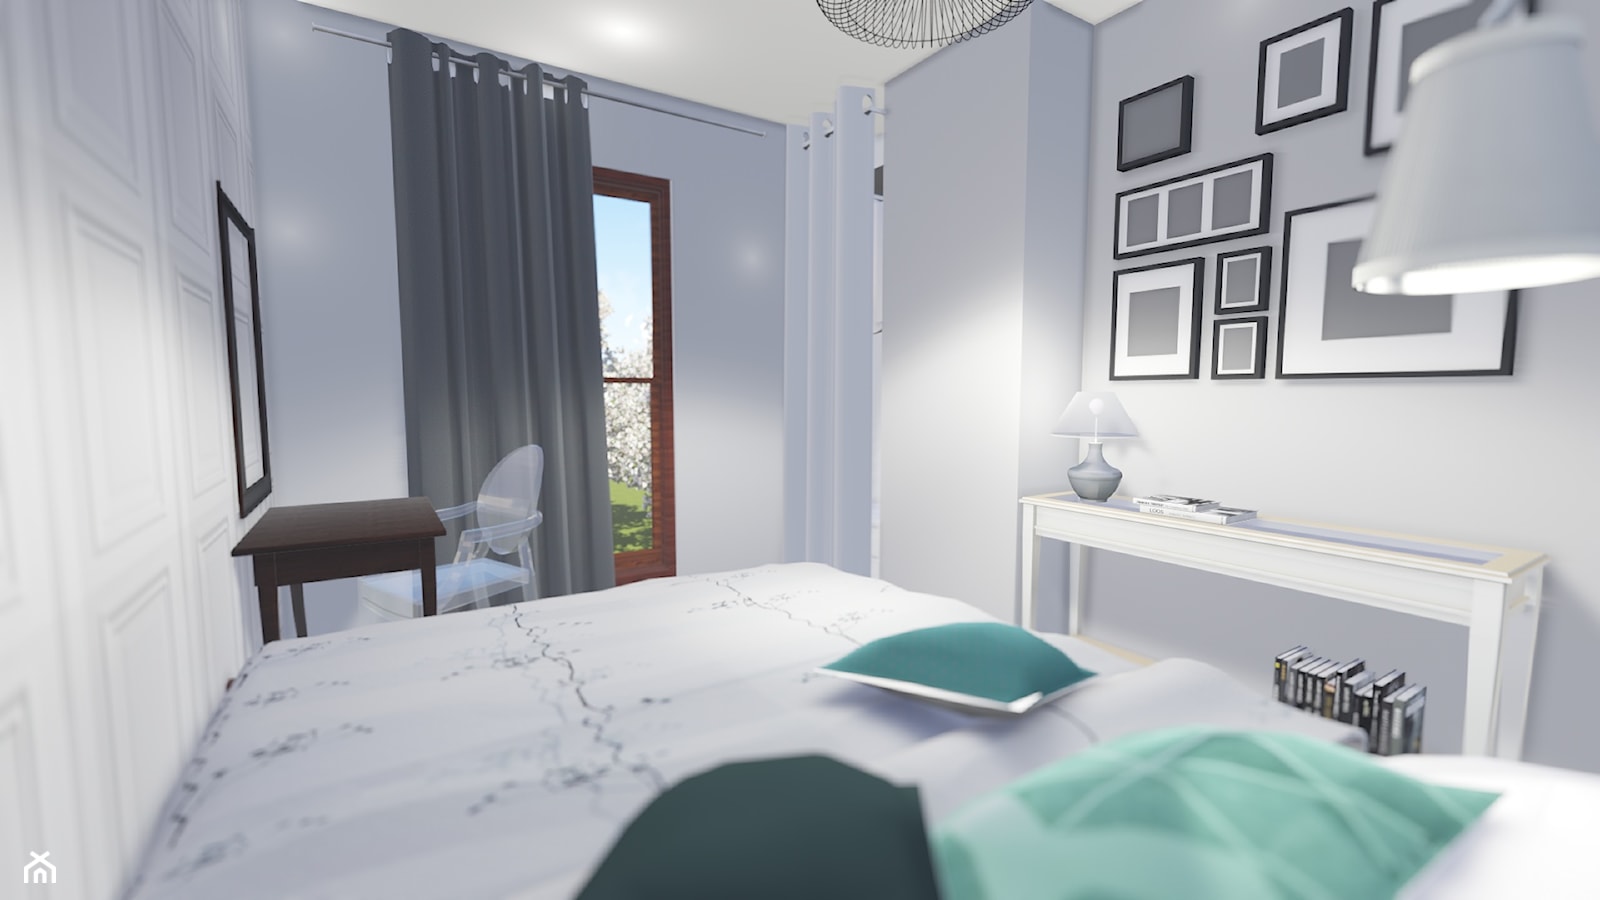 WHITE DREAM - BEDROOM - Sypialnia, styl tradycyjny - zdjęcie od biscuit PROJEKT - Homebook